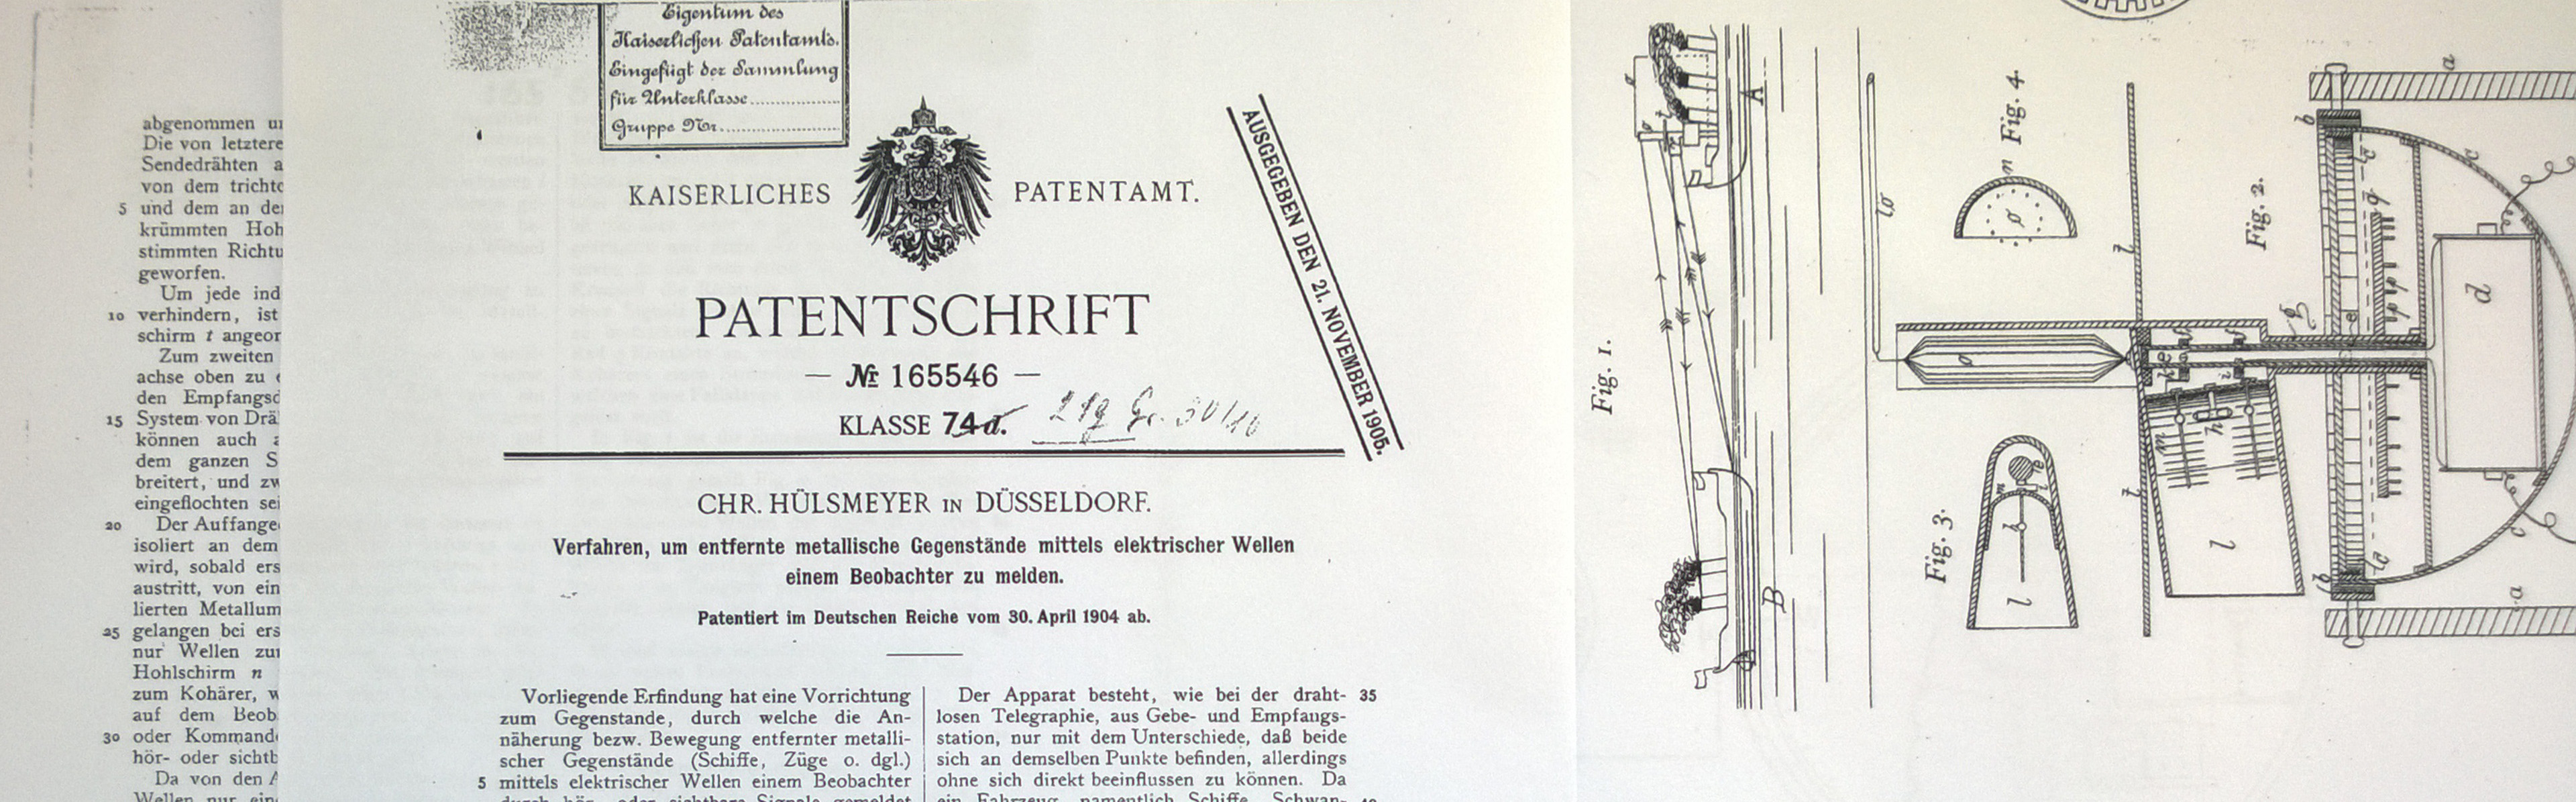 Am 30. April 1904 meldete Christian Hülsmeyer seine Erfindung zum Patent an.